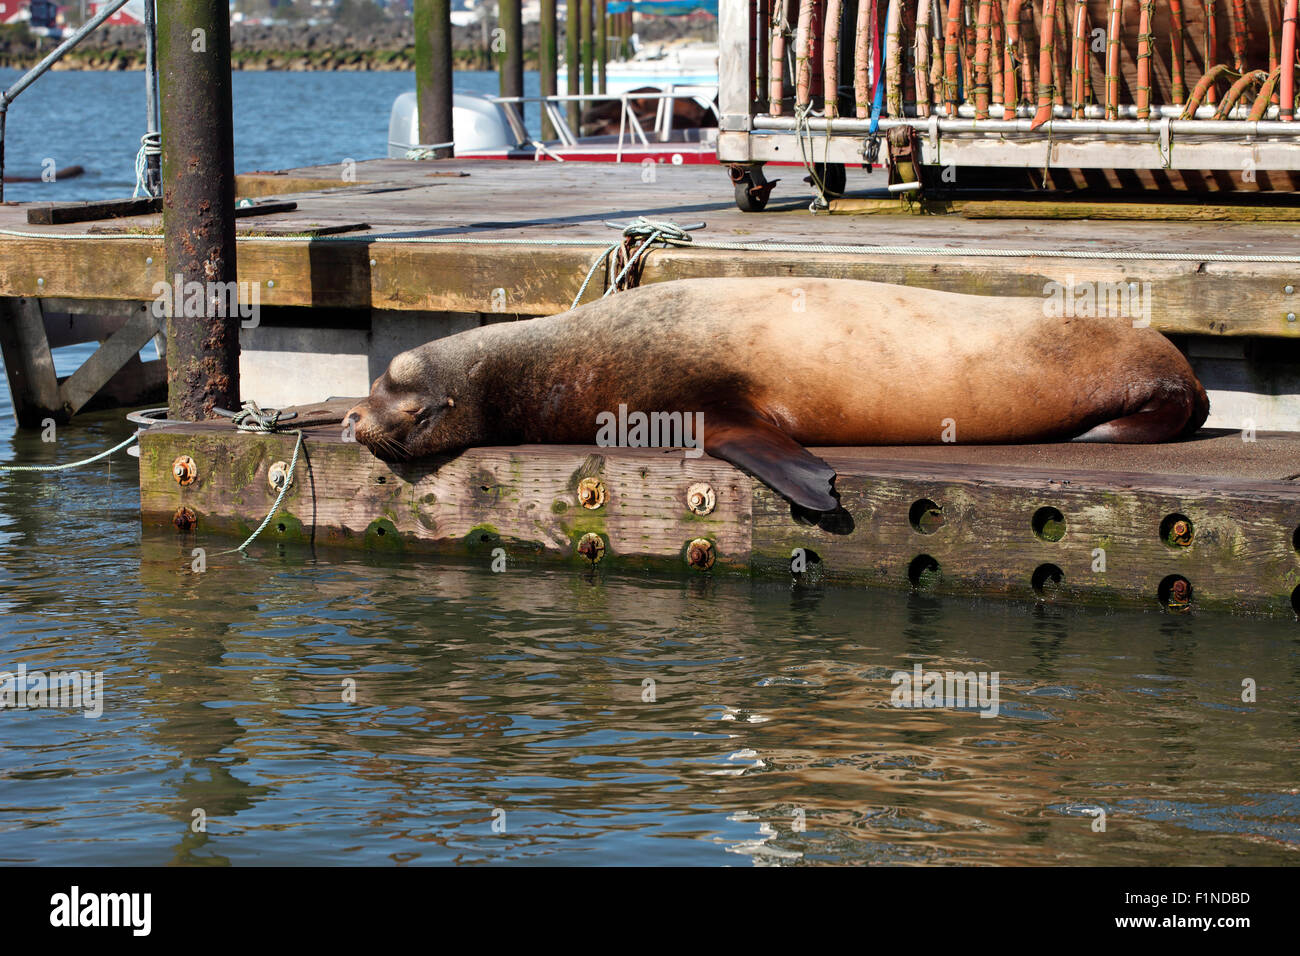 Sea lion basking on a pier in Astoria Oregon. Stock Photo